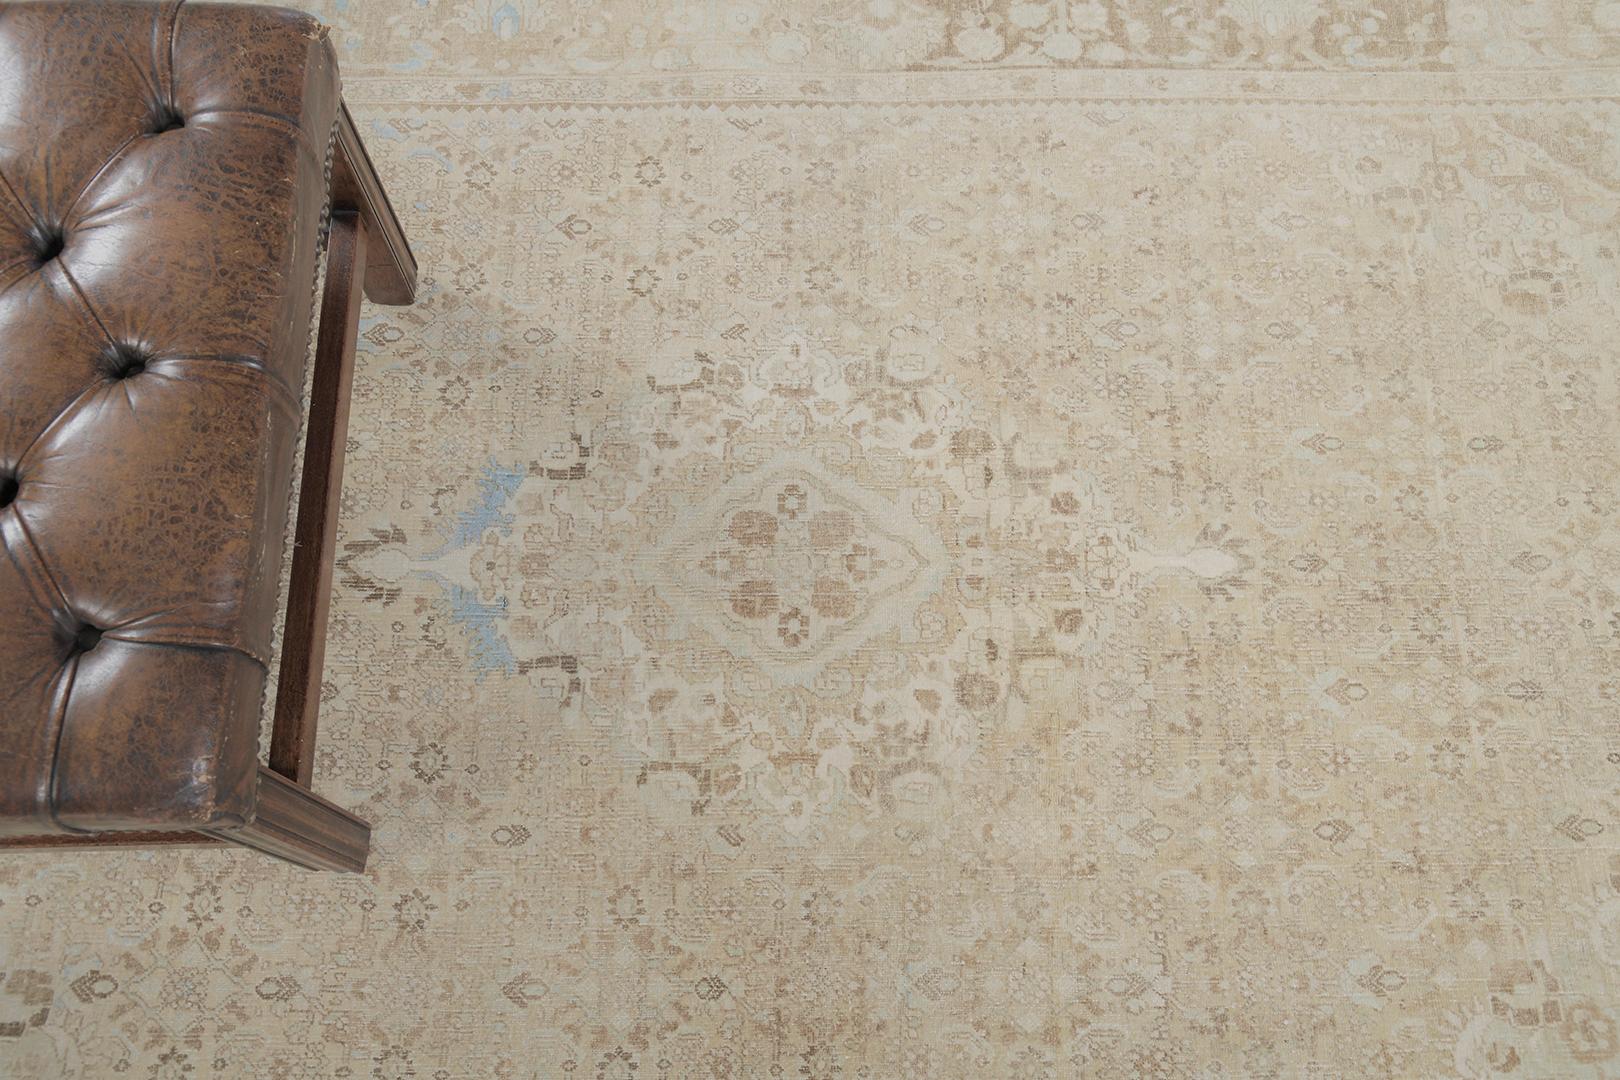 Ein anmutiger antiker persischer Bidjar-Teppich mit einer Reihe von Herati-Mustern, die aus verschiedenen botanischen Elementen in den prächtigen Tönen von Kamel, Hellbraun und Elfenbein bestehen. Dieser raffinierte Teppich hat einen mühelosen